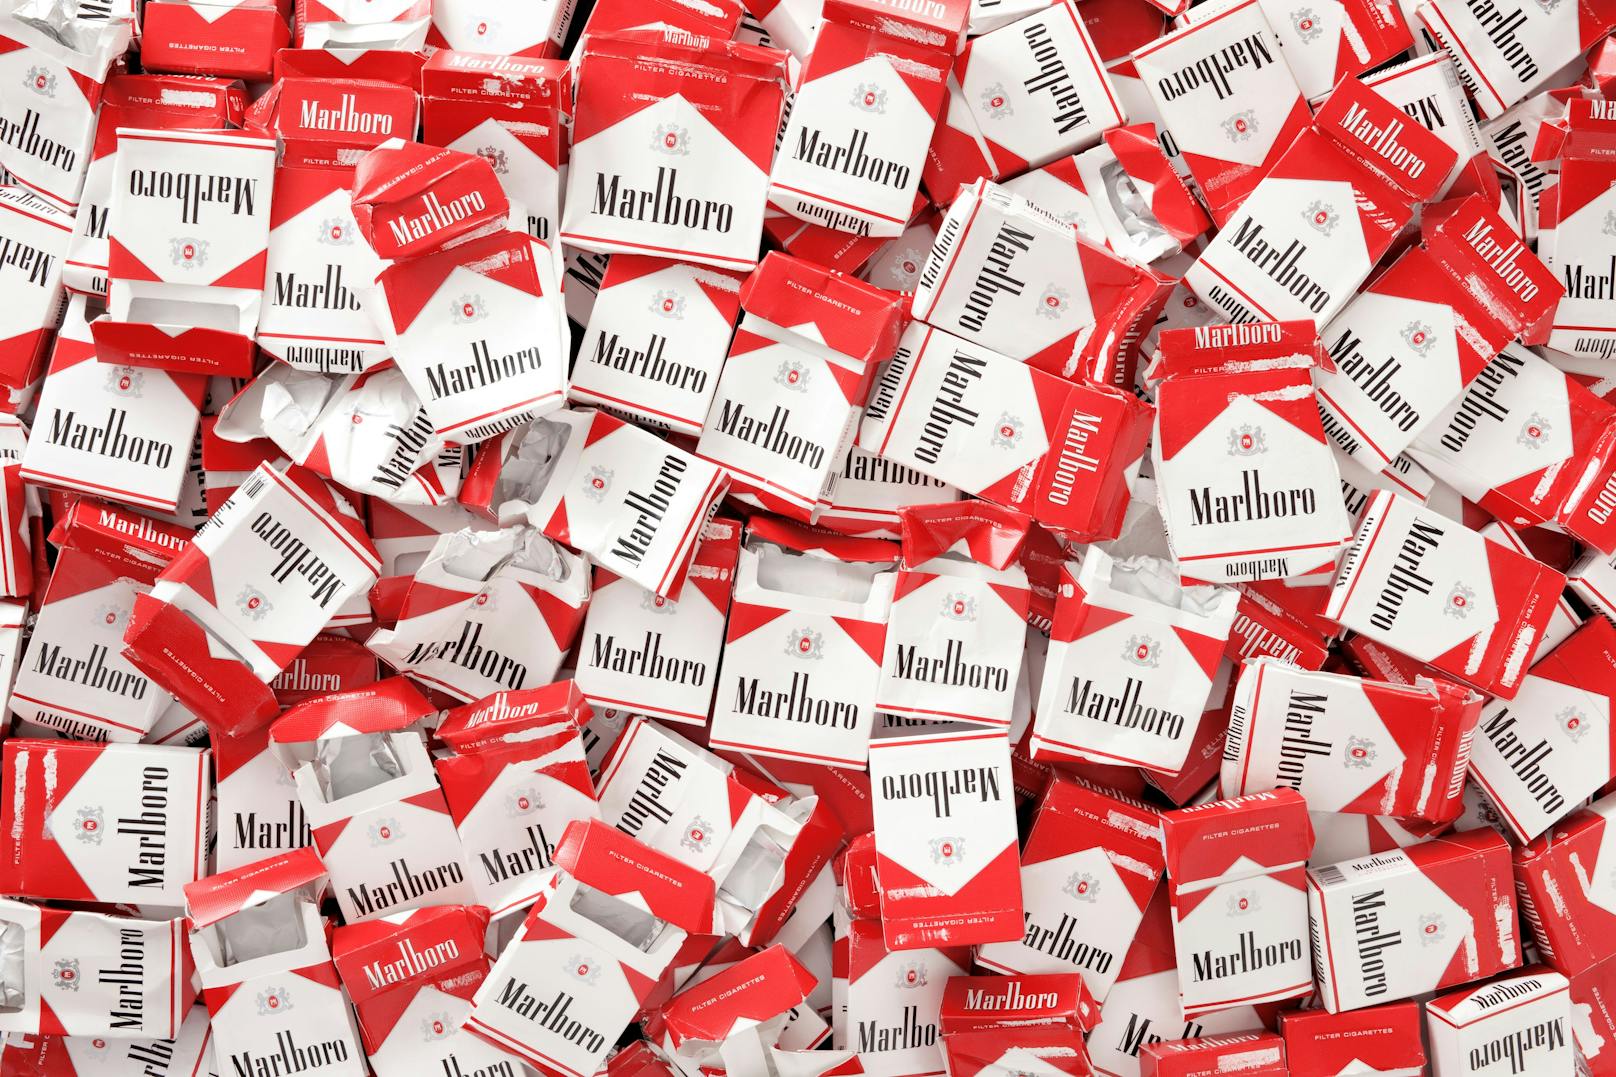 Der Schmuggel der Zigaretten hätte für die Bande zu Einnahmen von 36 Millionen Euro geführt. 